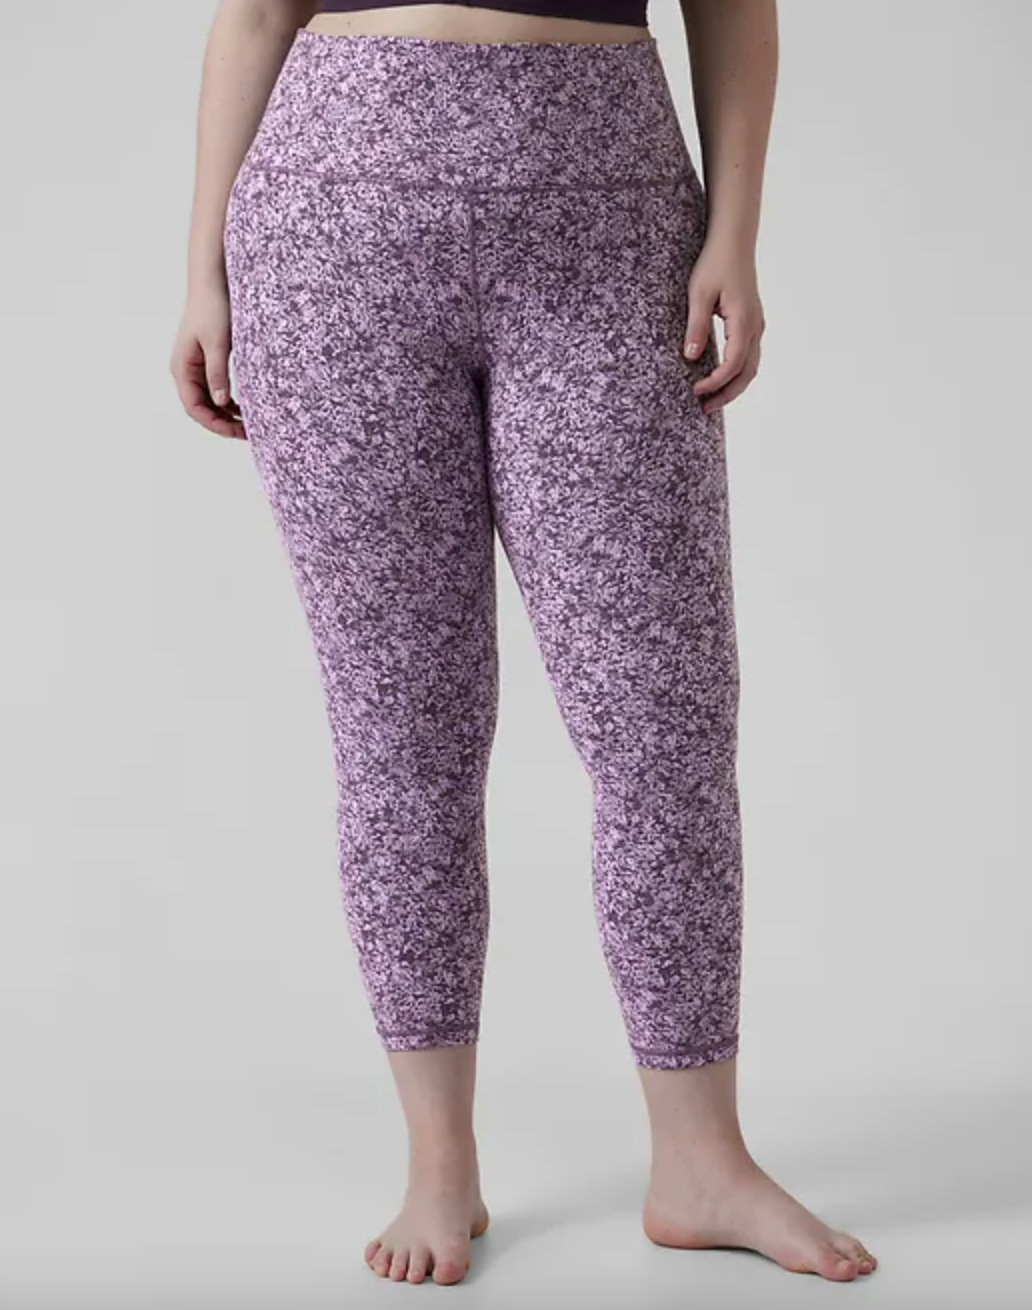 model wearing pink and purple printed leggings